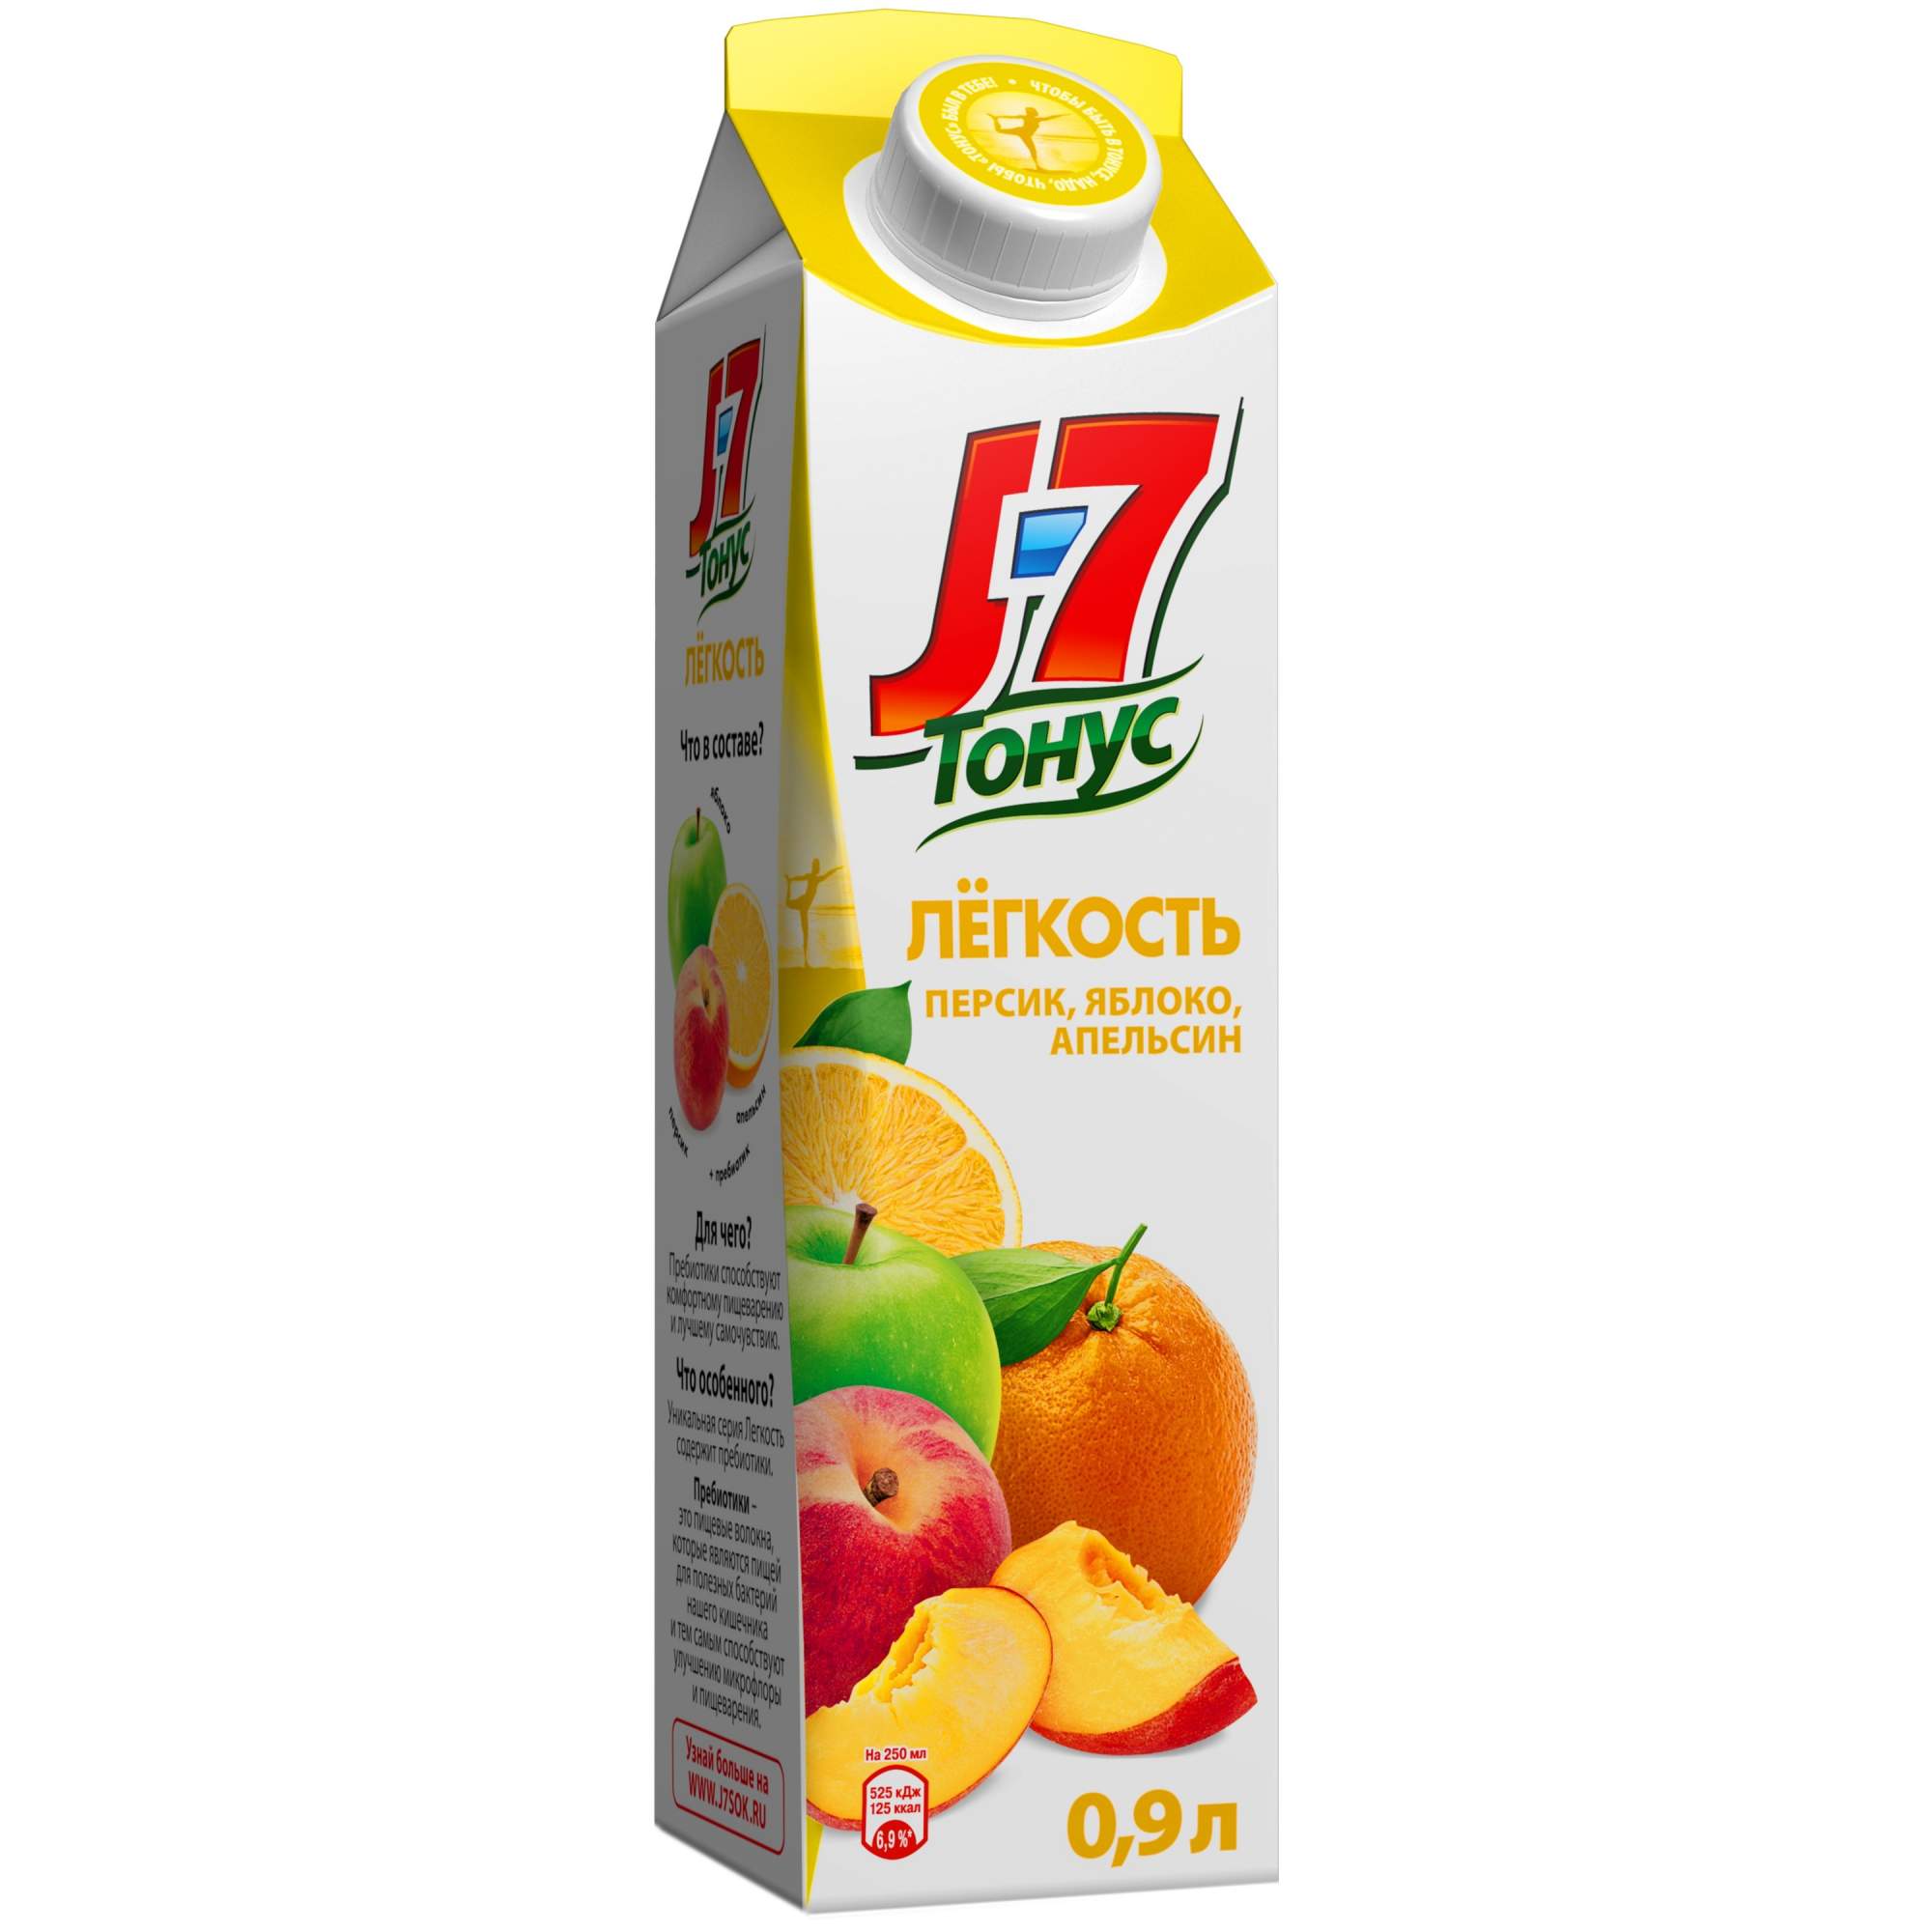 Нектар персик-яблоко-апельсин J7 тонус легкость с пребиотиком 0.9 л